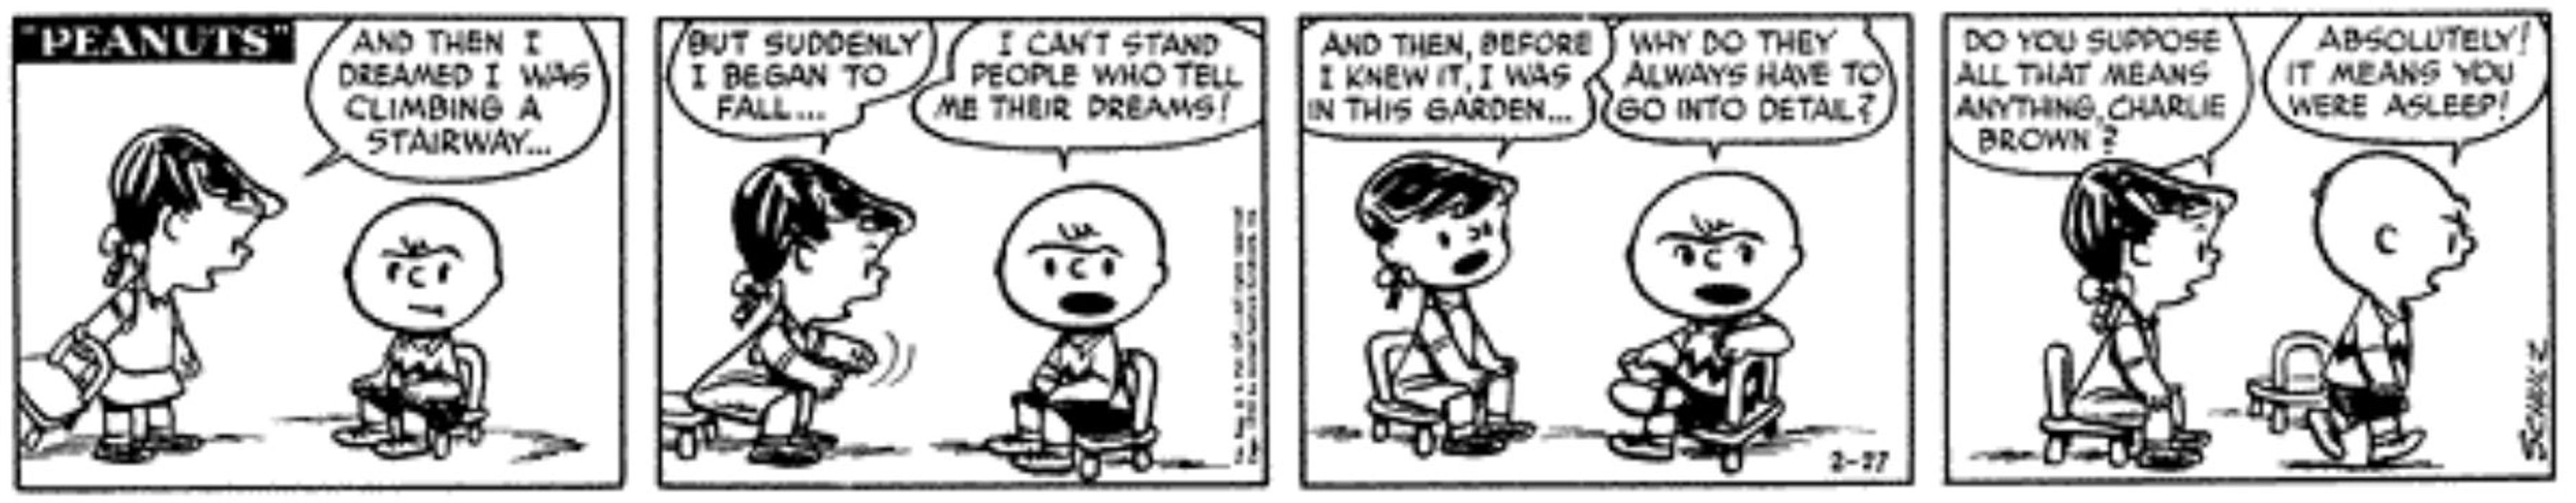 Charlie Brown Dreams Peanuts